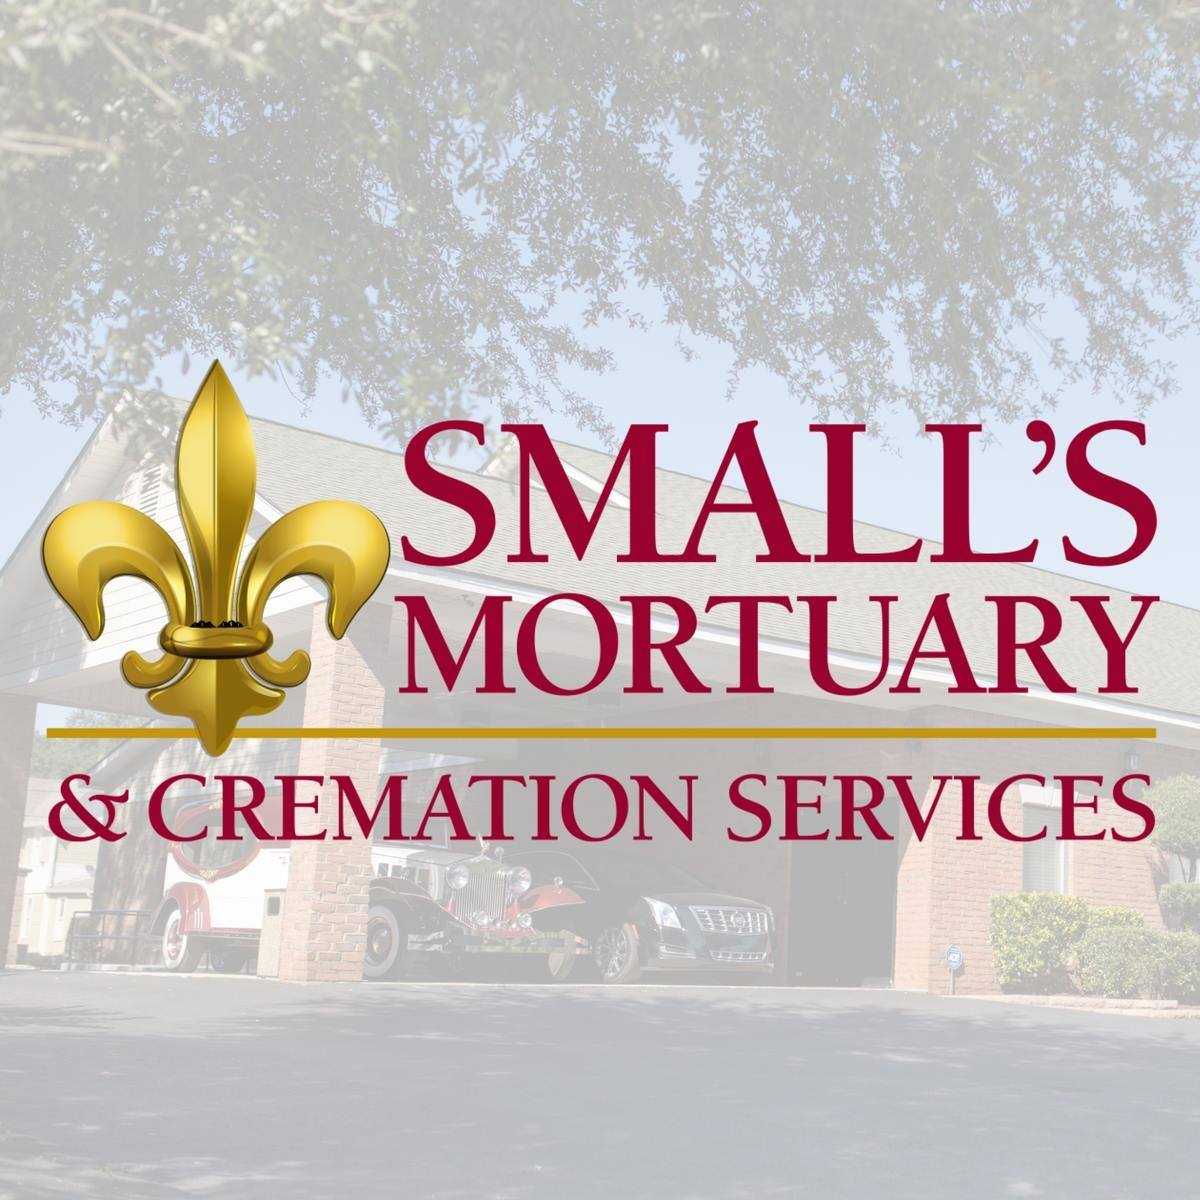 Small's Mortuary